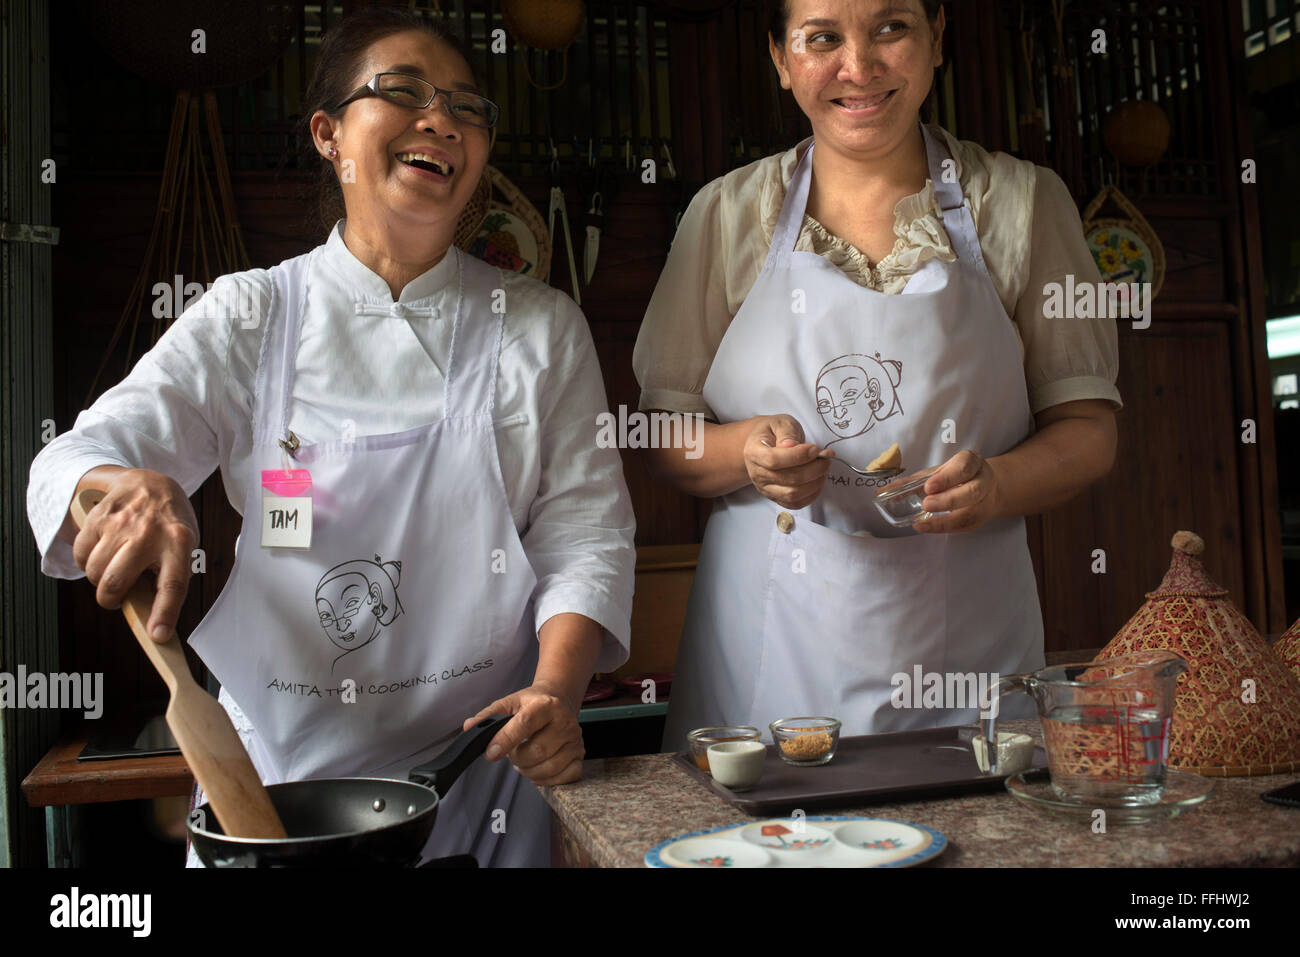 Amita Thai Kochschule. Bangkok. Thailand. Amita Thai Cooking Class befindet sich in der Landschaft des Flusses Chao Phraya, Stockfoto